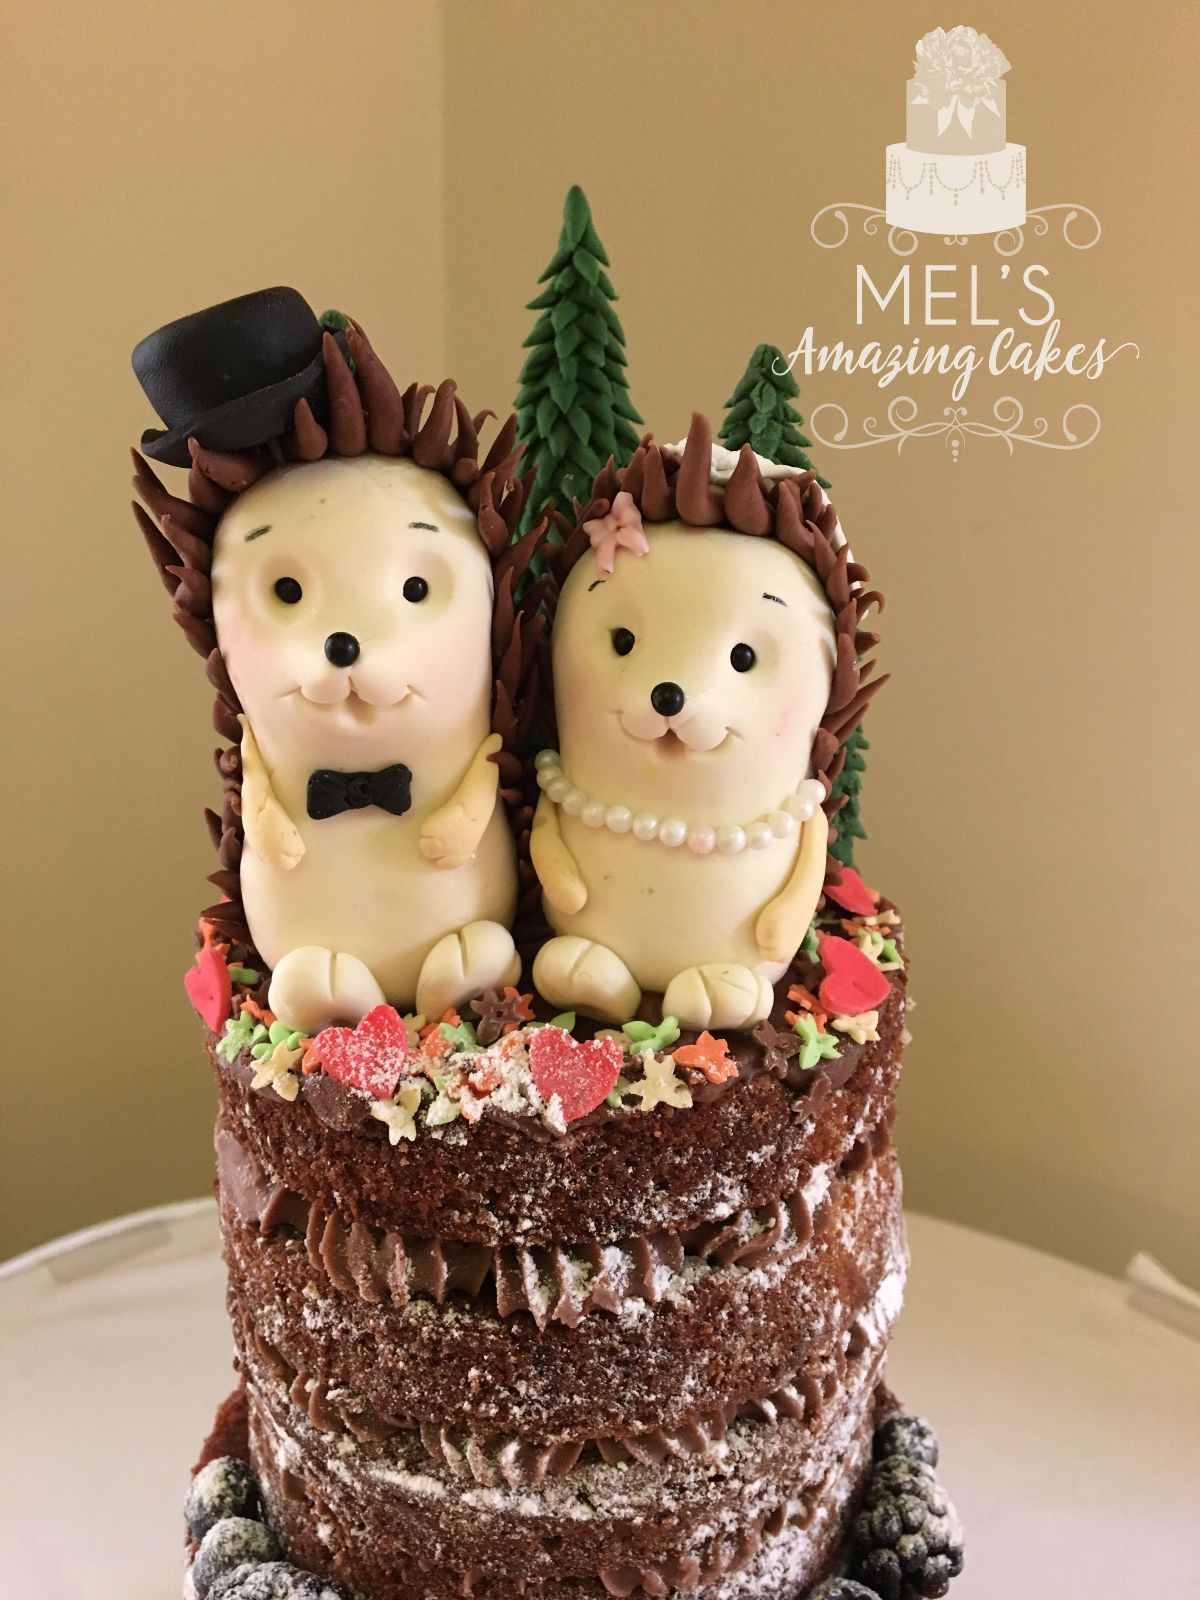 Mel's Amazing Cakes-Image-89